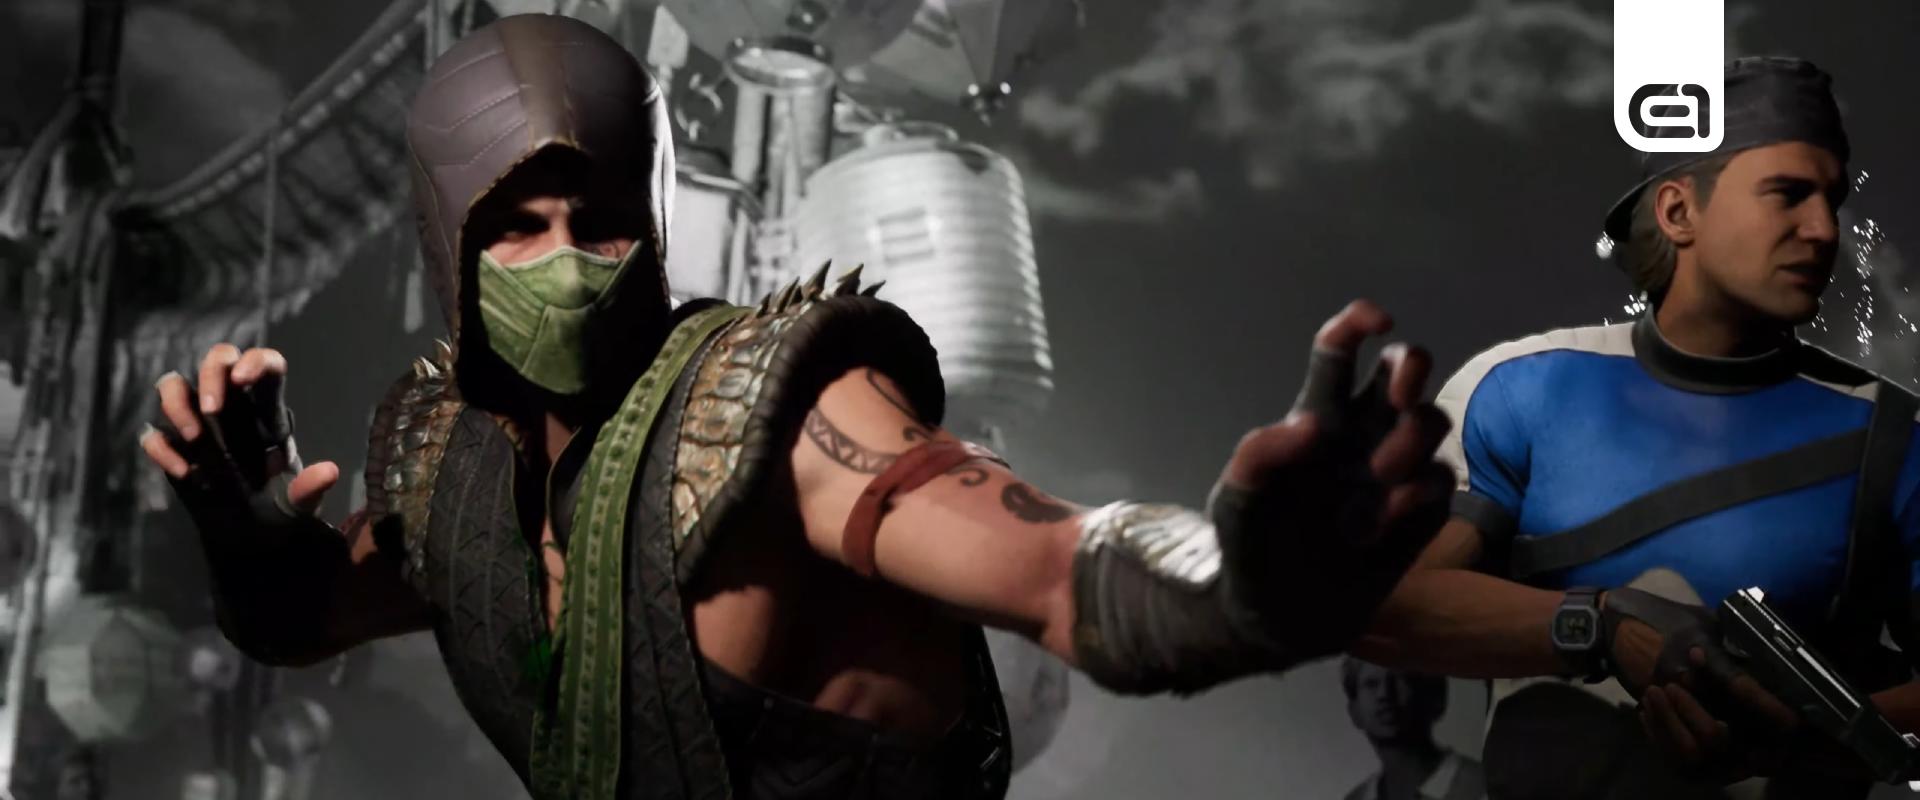 Minden idők egyik legjobb Mortal Kombat trailere 3 új karaktert is felfedett